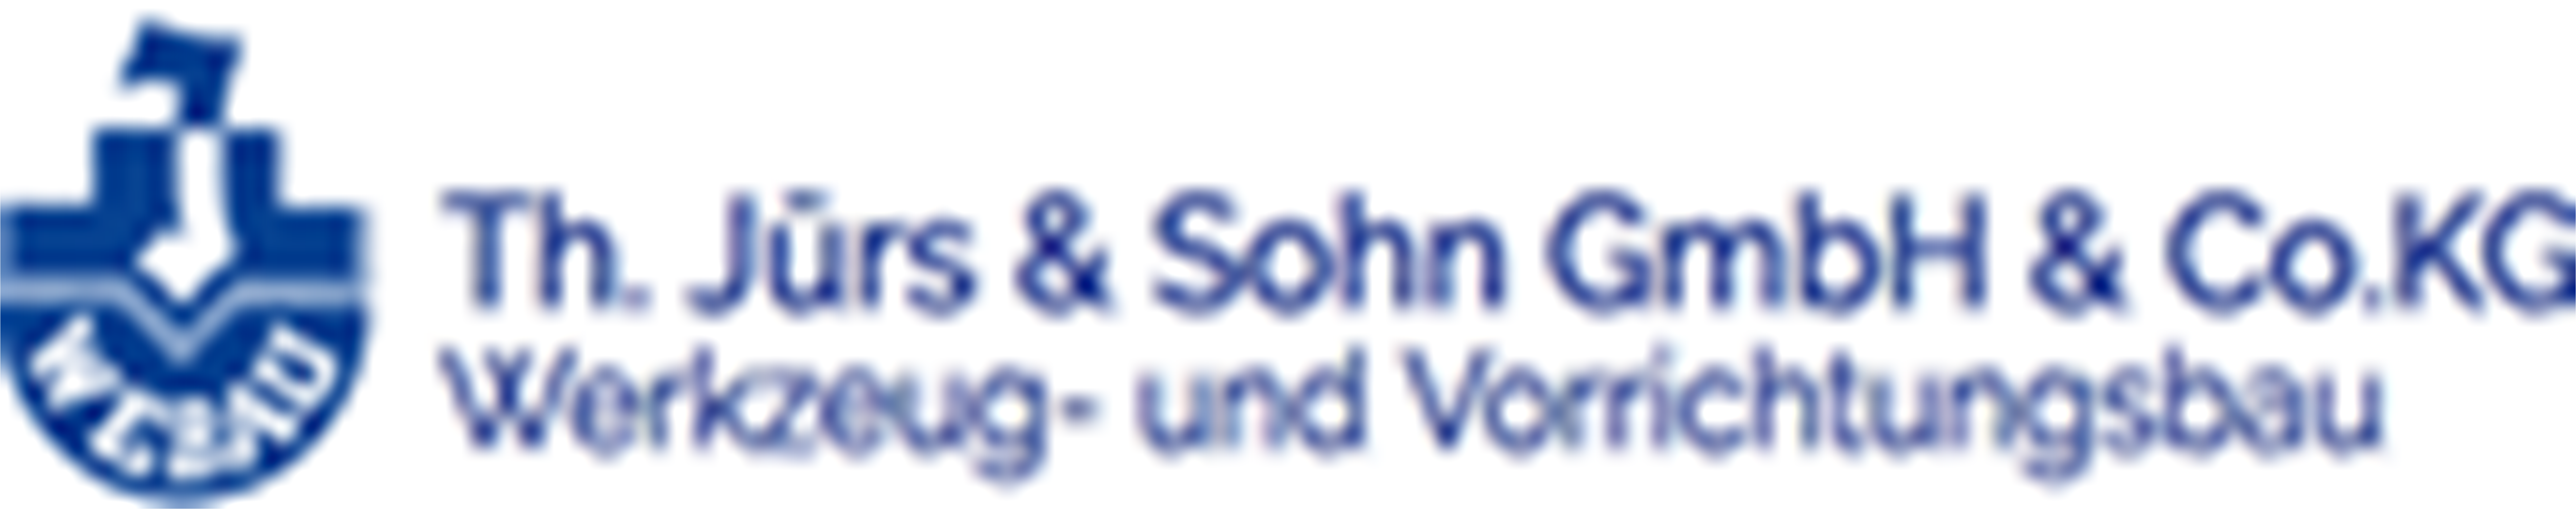 Th. Juers und Sohn GmbH und Co. KG